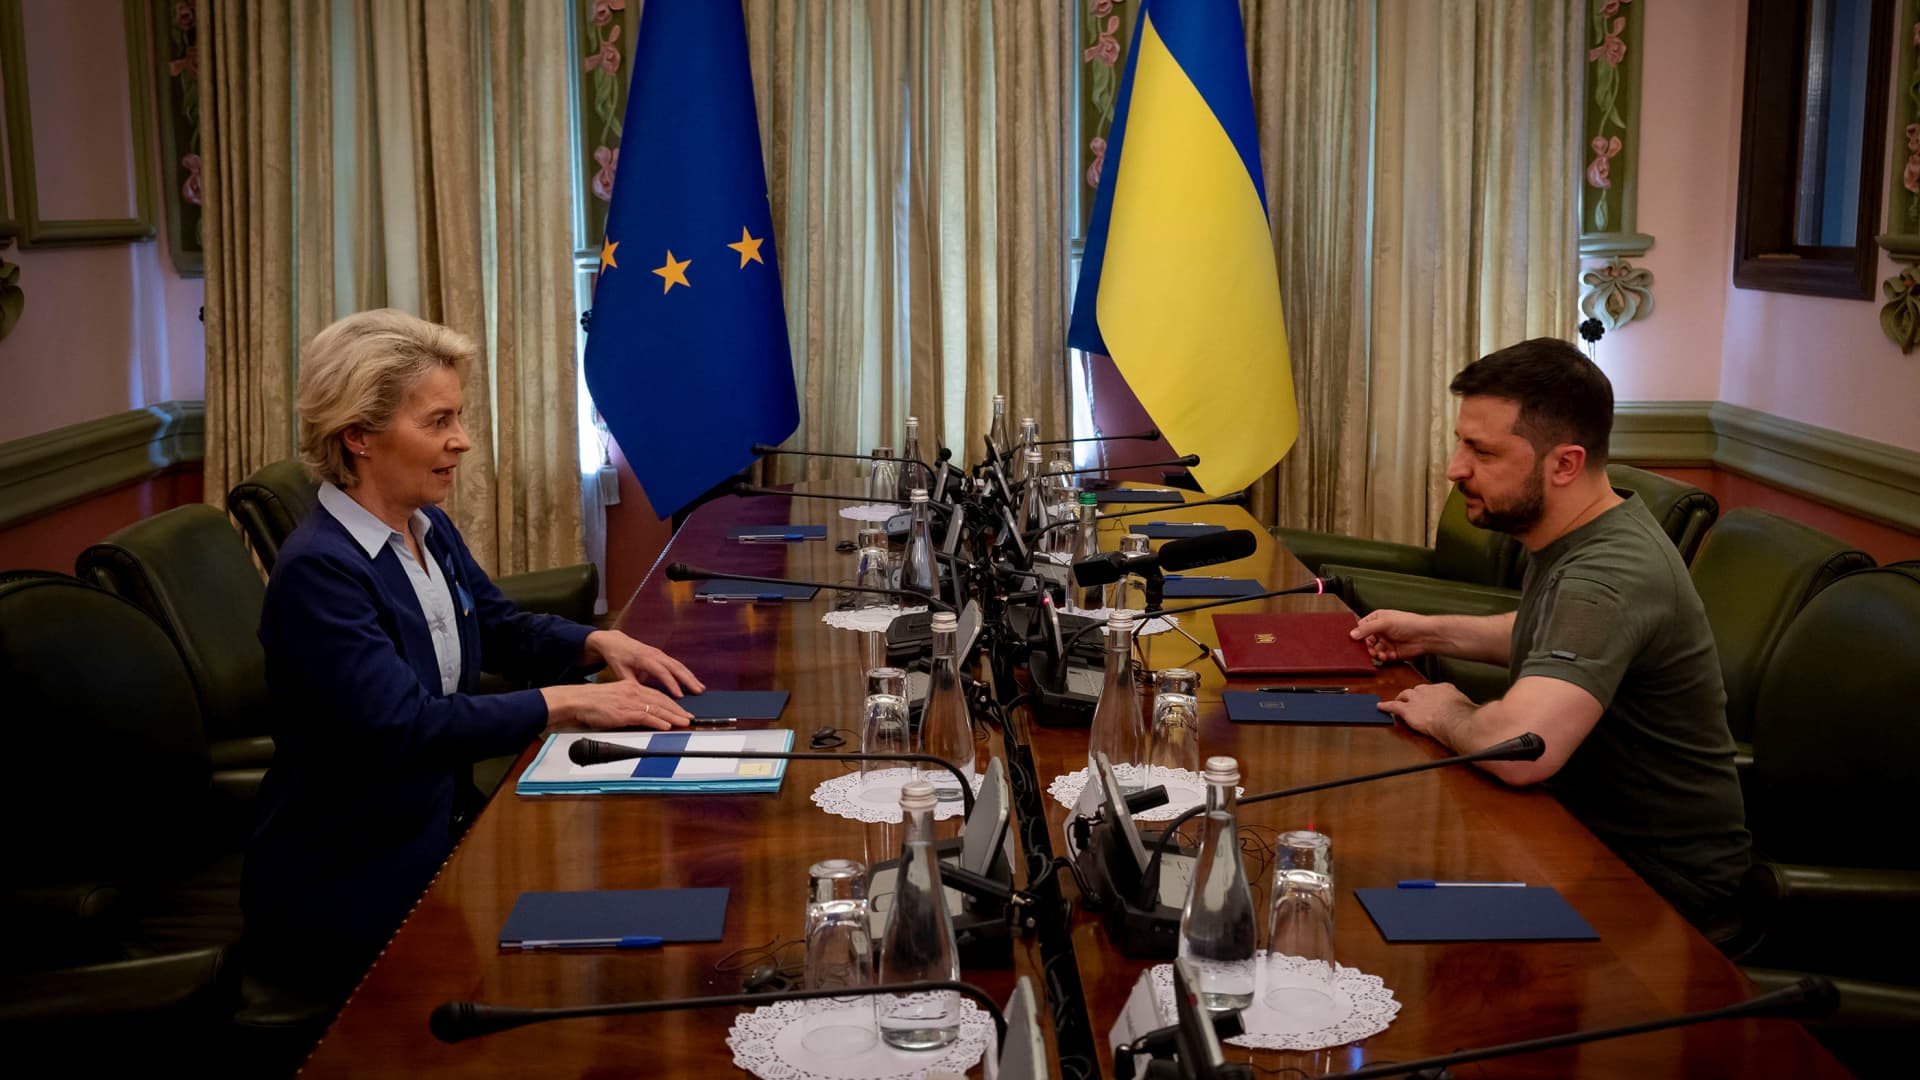 Ukraine's President Volodymyr Zelenskyy and European Commission President Ursula von der Layen at a meeting in Kyiv, Ukraine, on June 11, 2022.